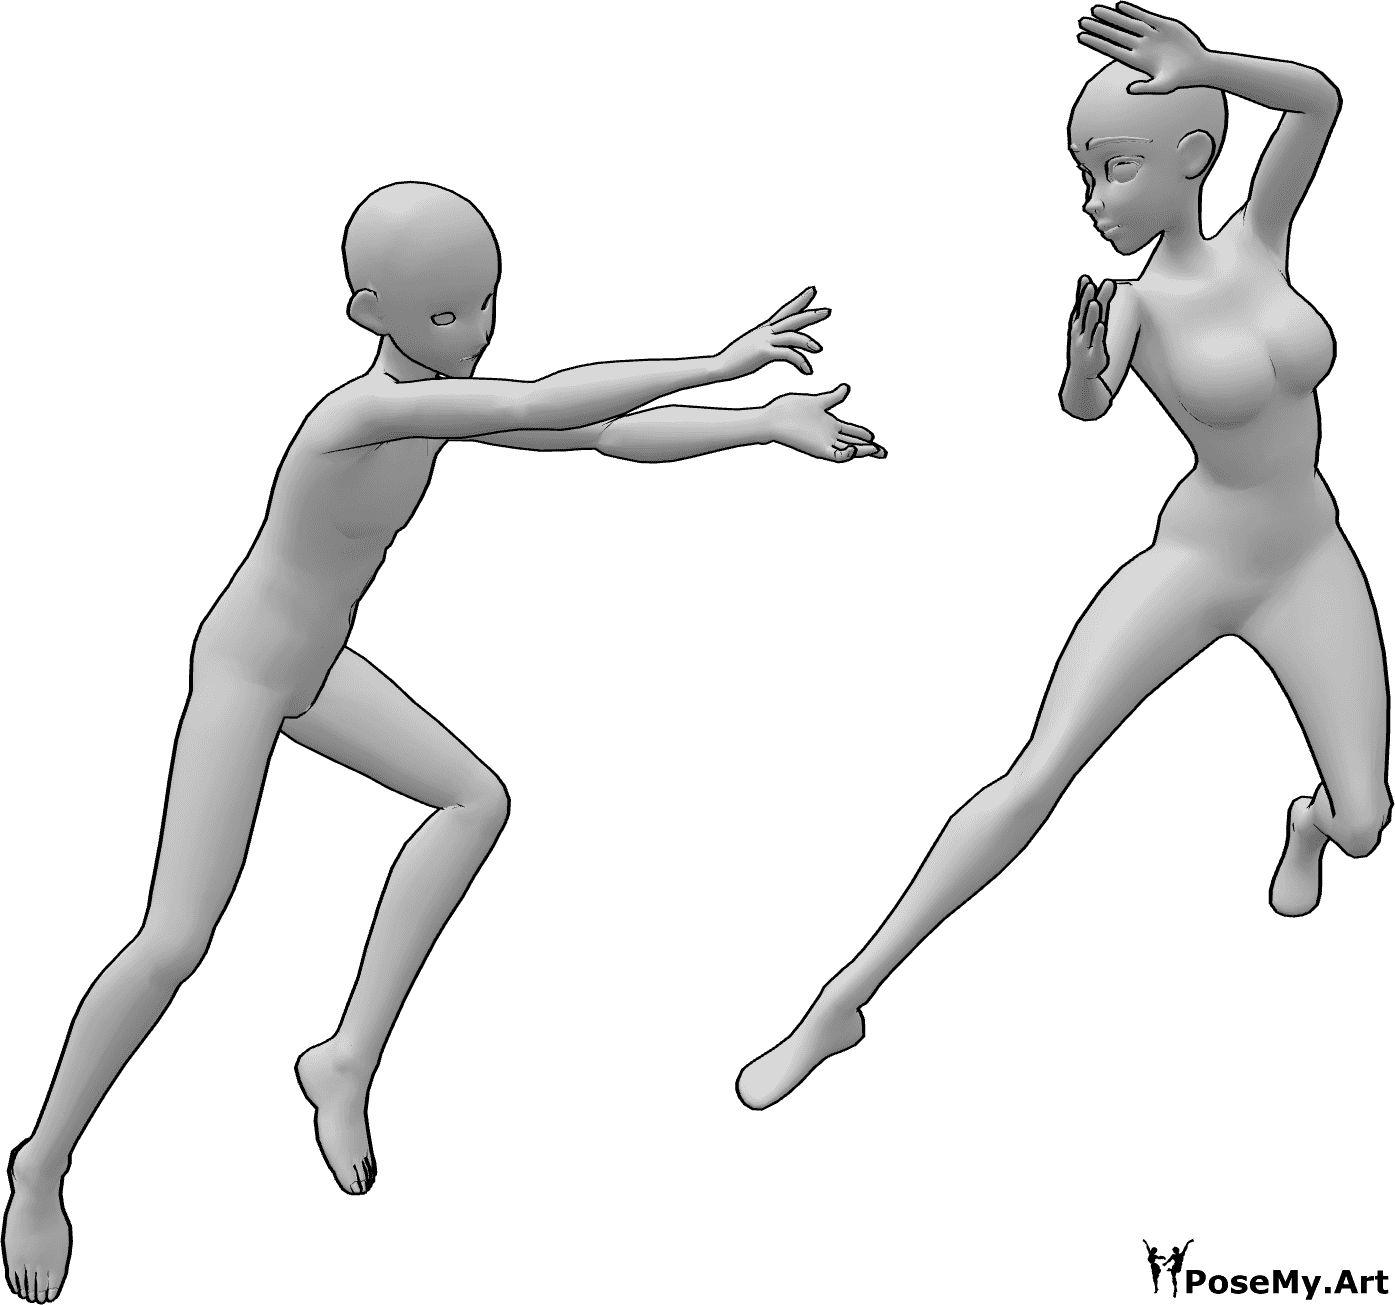 Référence des poses- Anime duo fight pose - Anime femme et homme dans un combat fantastique dans les airs avec des pouvoirs magiques pose